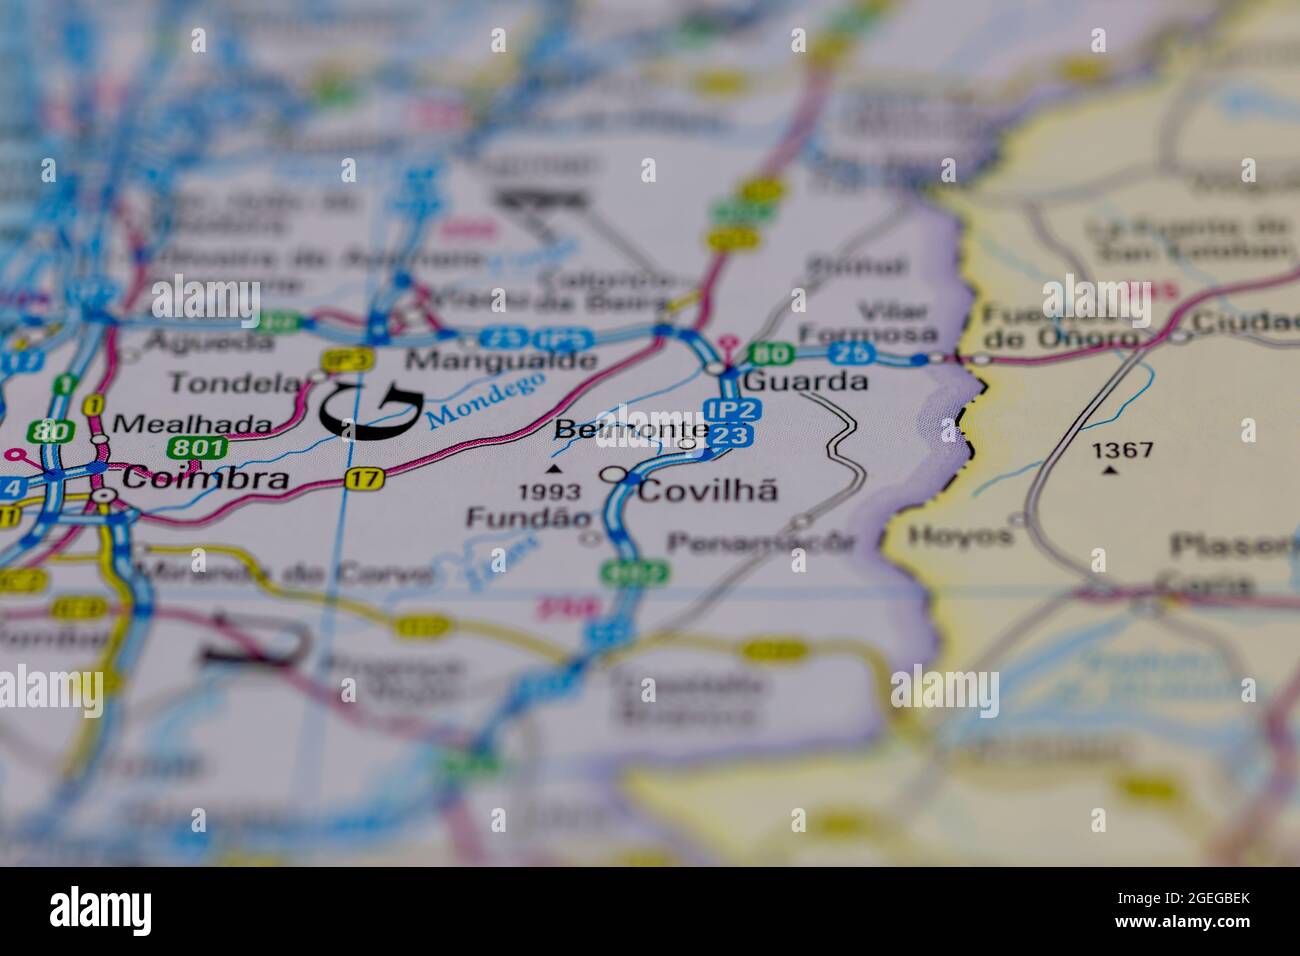 Belmonte Portugal aparece en un mapa de carreteras o en un mapa geográfico Foto de stock